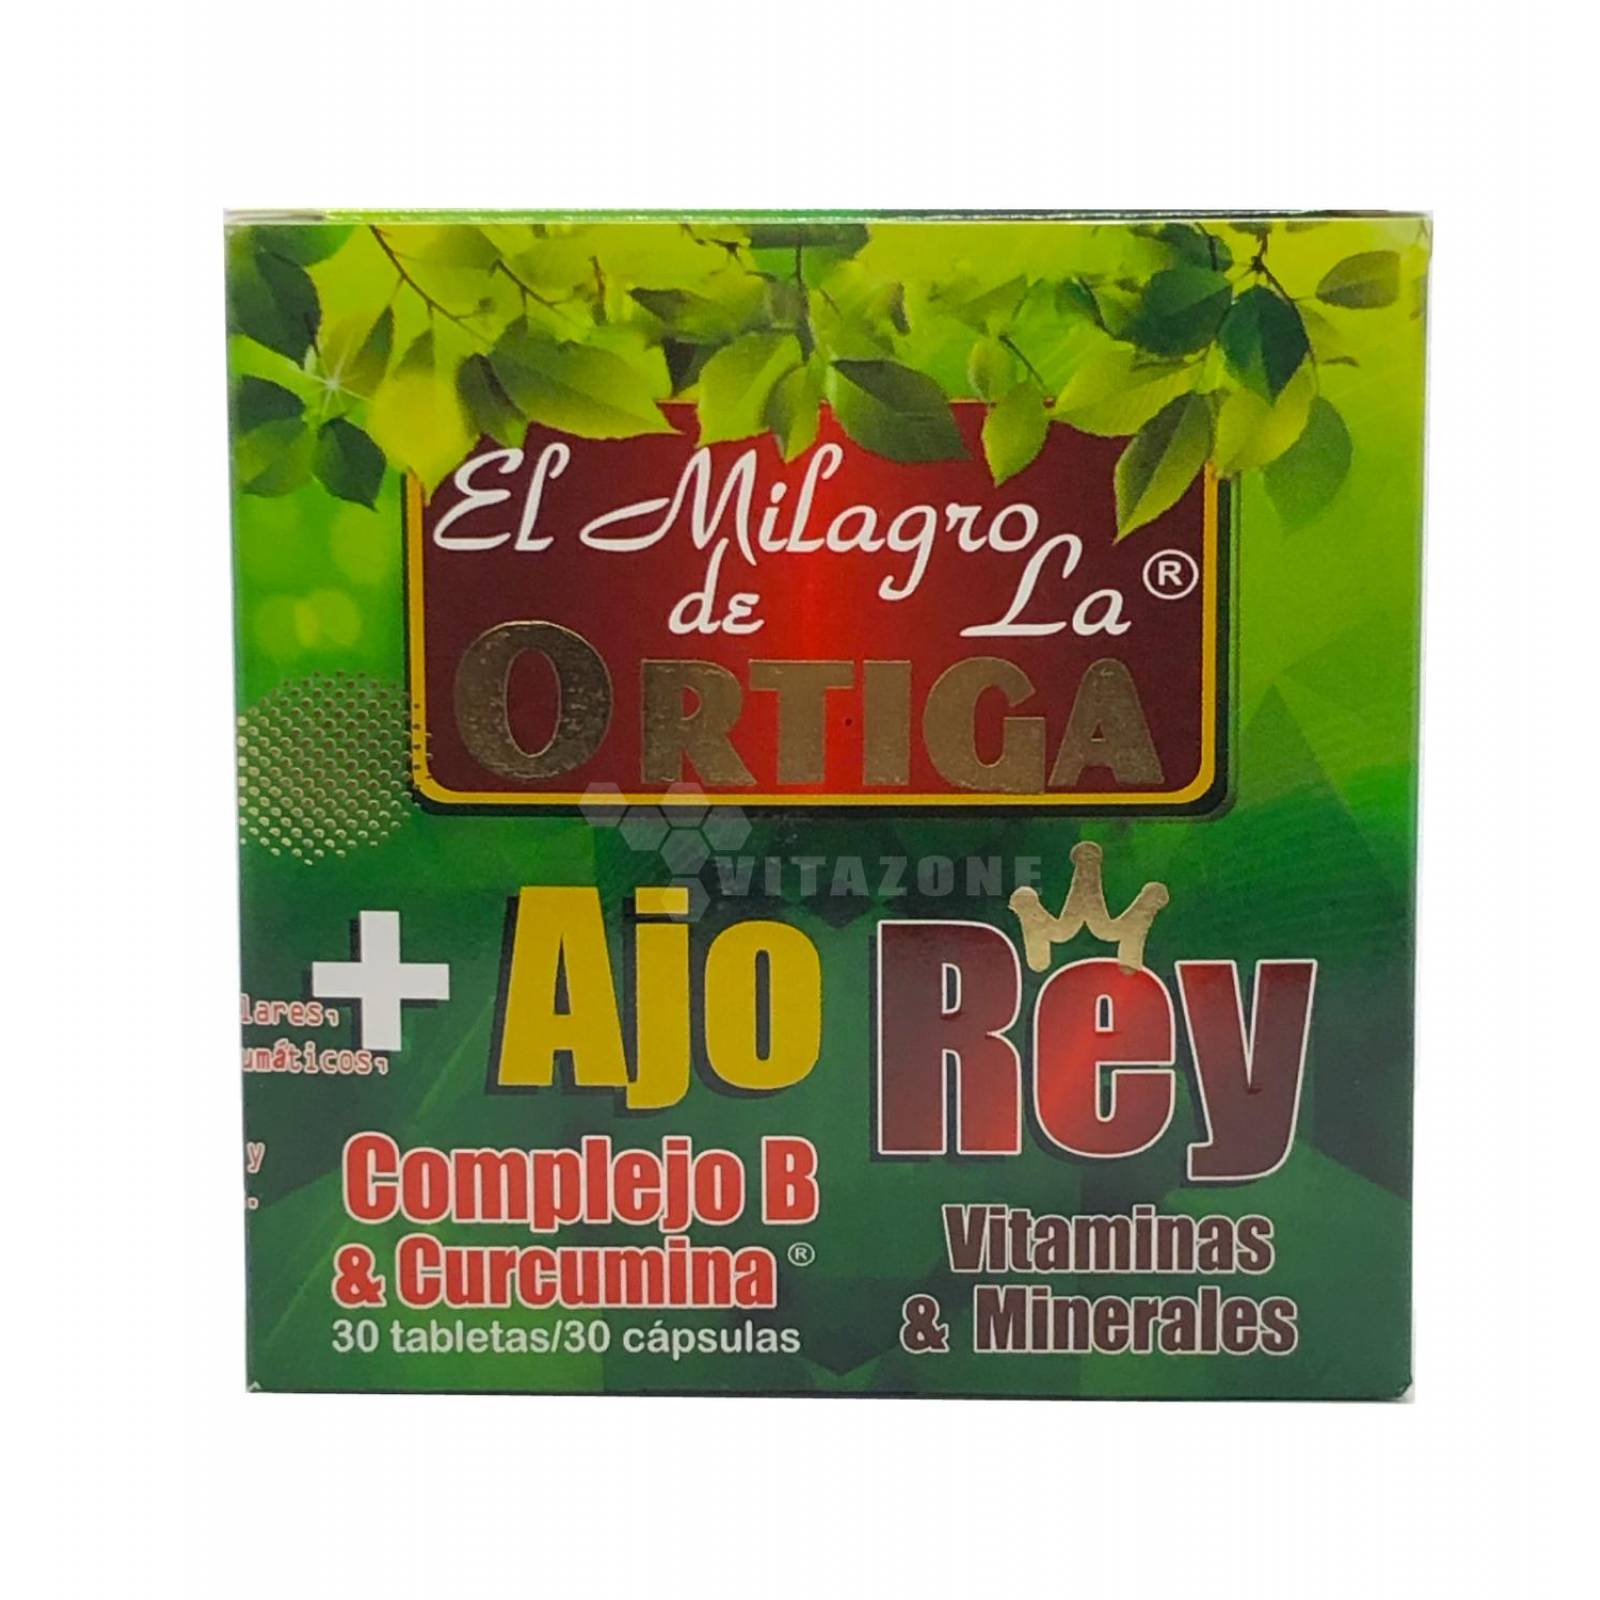 Ortiga con Ajo Rey Curcumina Complejo B 60 tabletas Original 